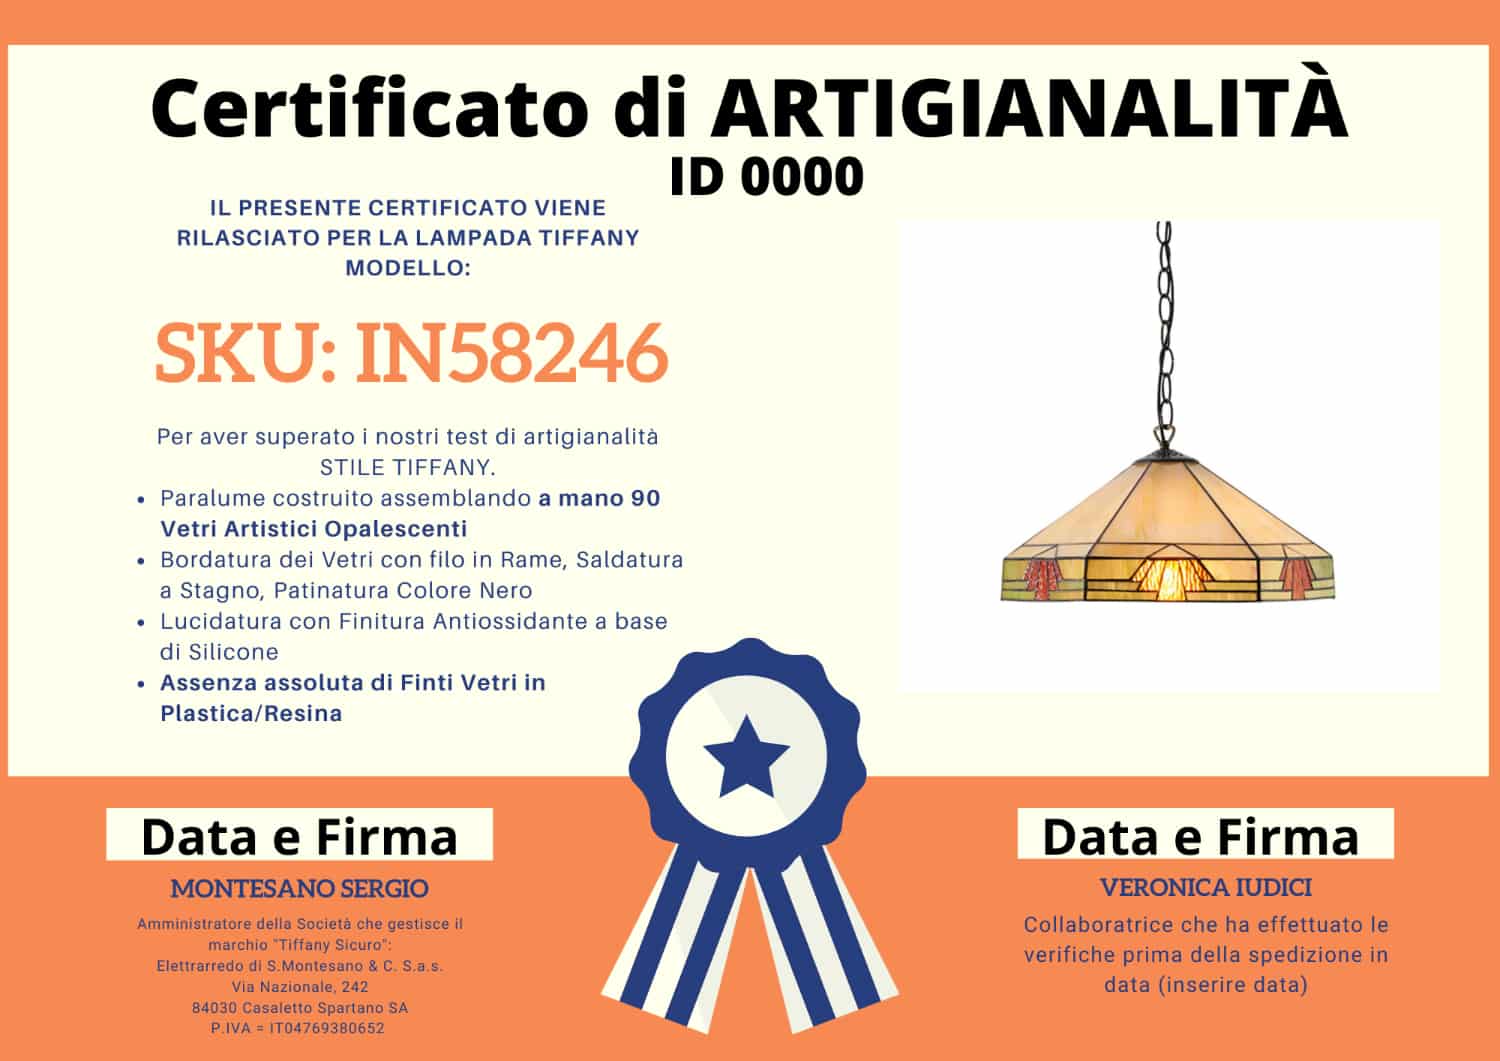 Lampadario Tiffany Esagonale, certificato